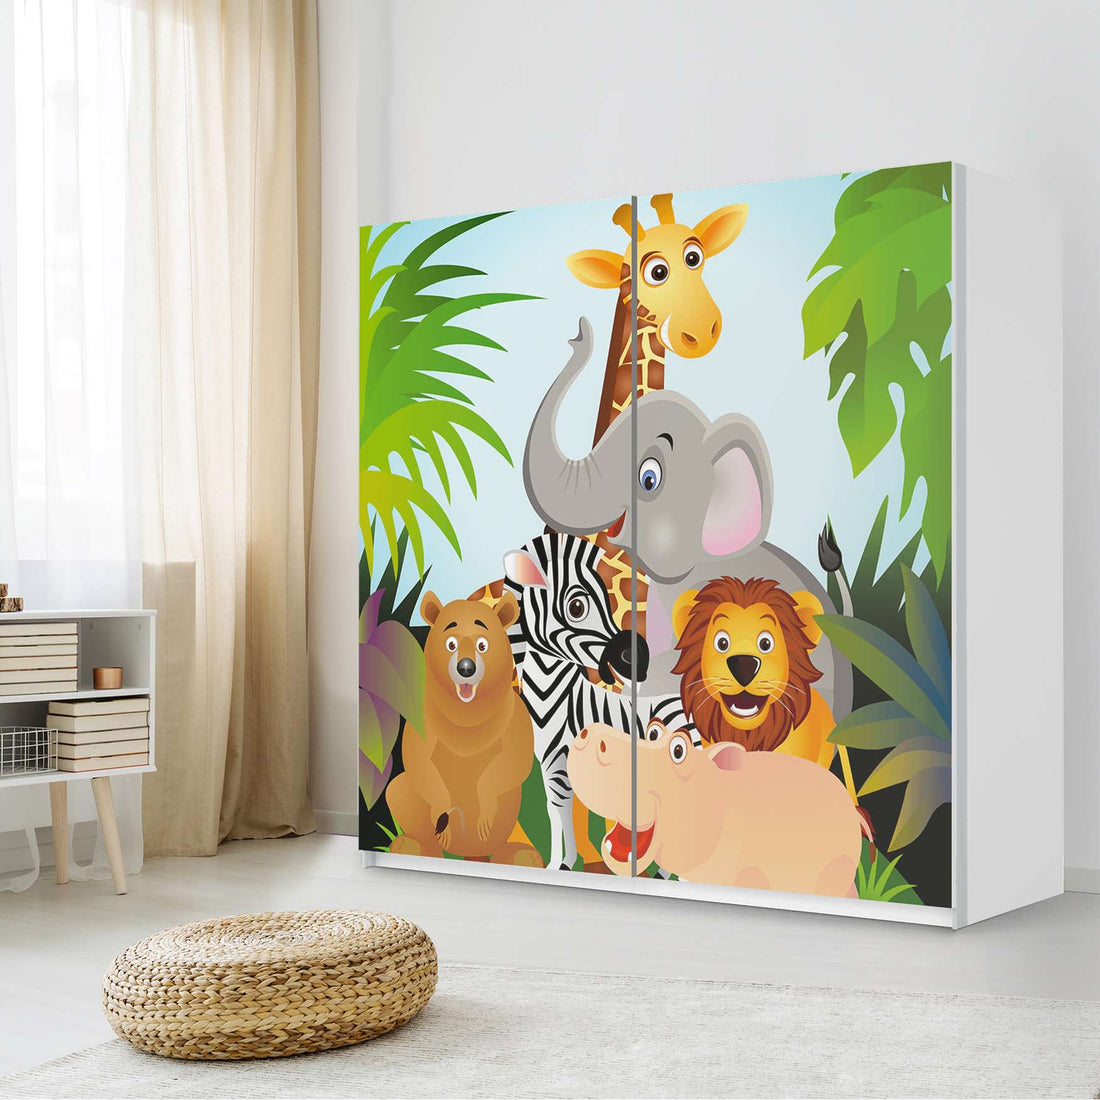 Möbel Klebefolie Wild Animals - IKEA Pax Schrank 201 cm Höhe - Schiebetür - Kinderzimmer